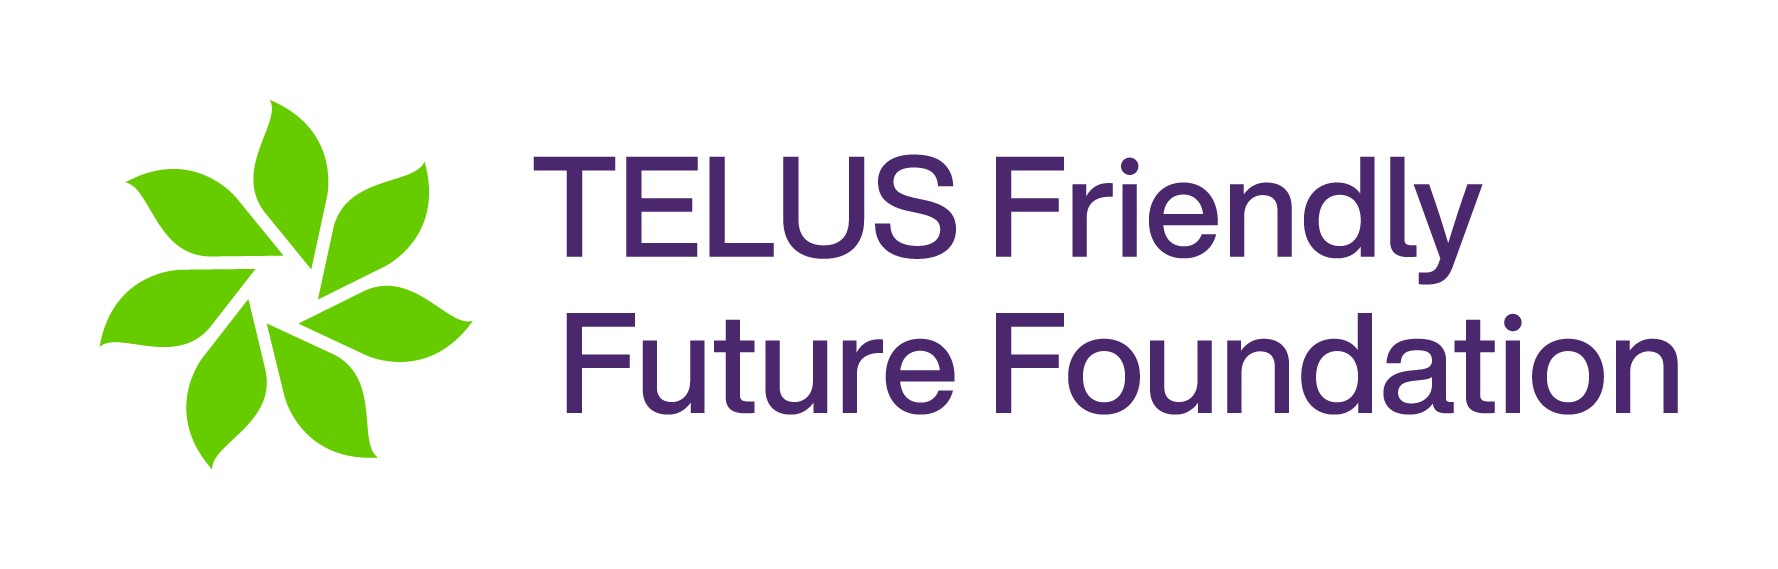 TELUS Friendly Future Foundation Logo